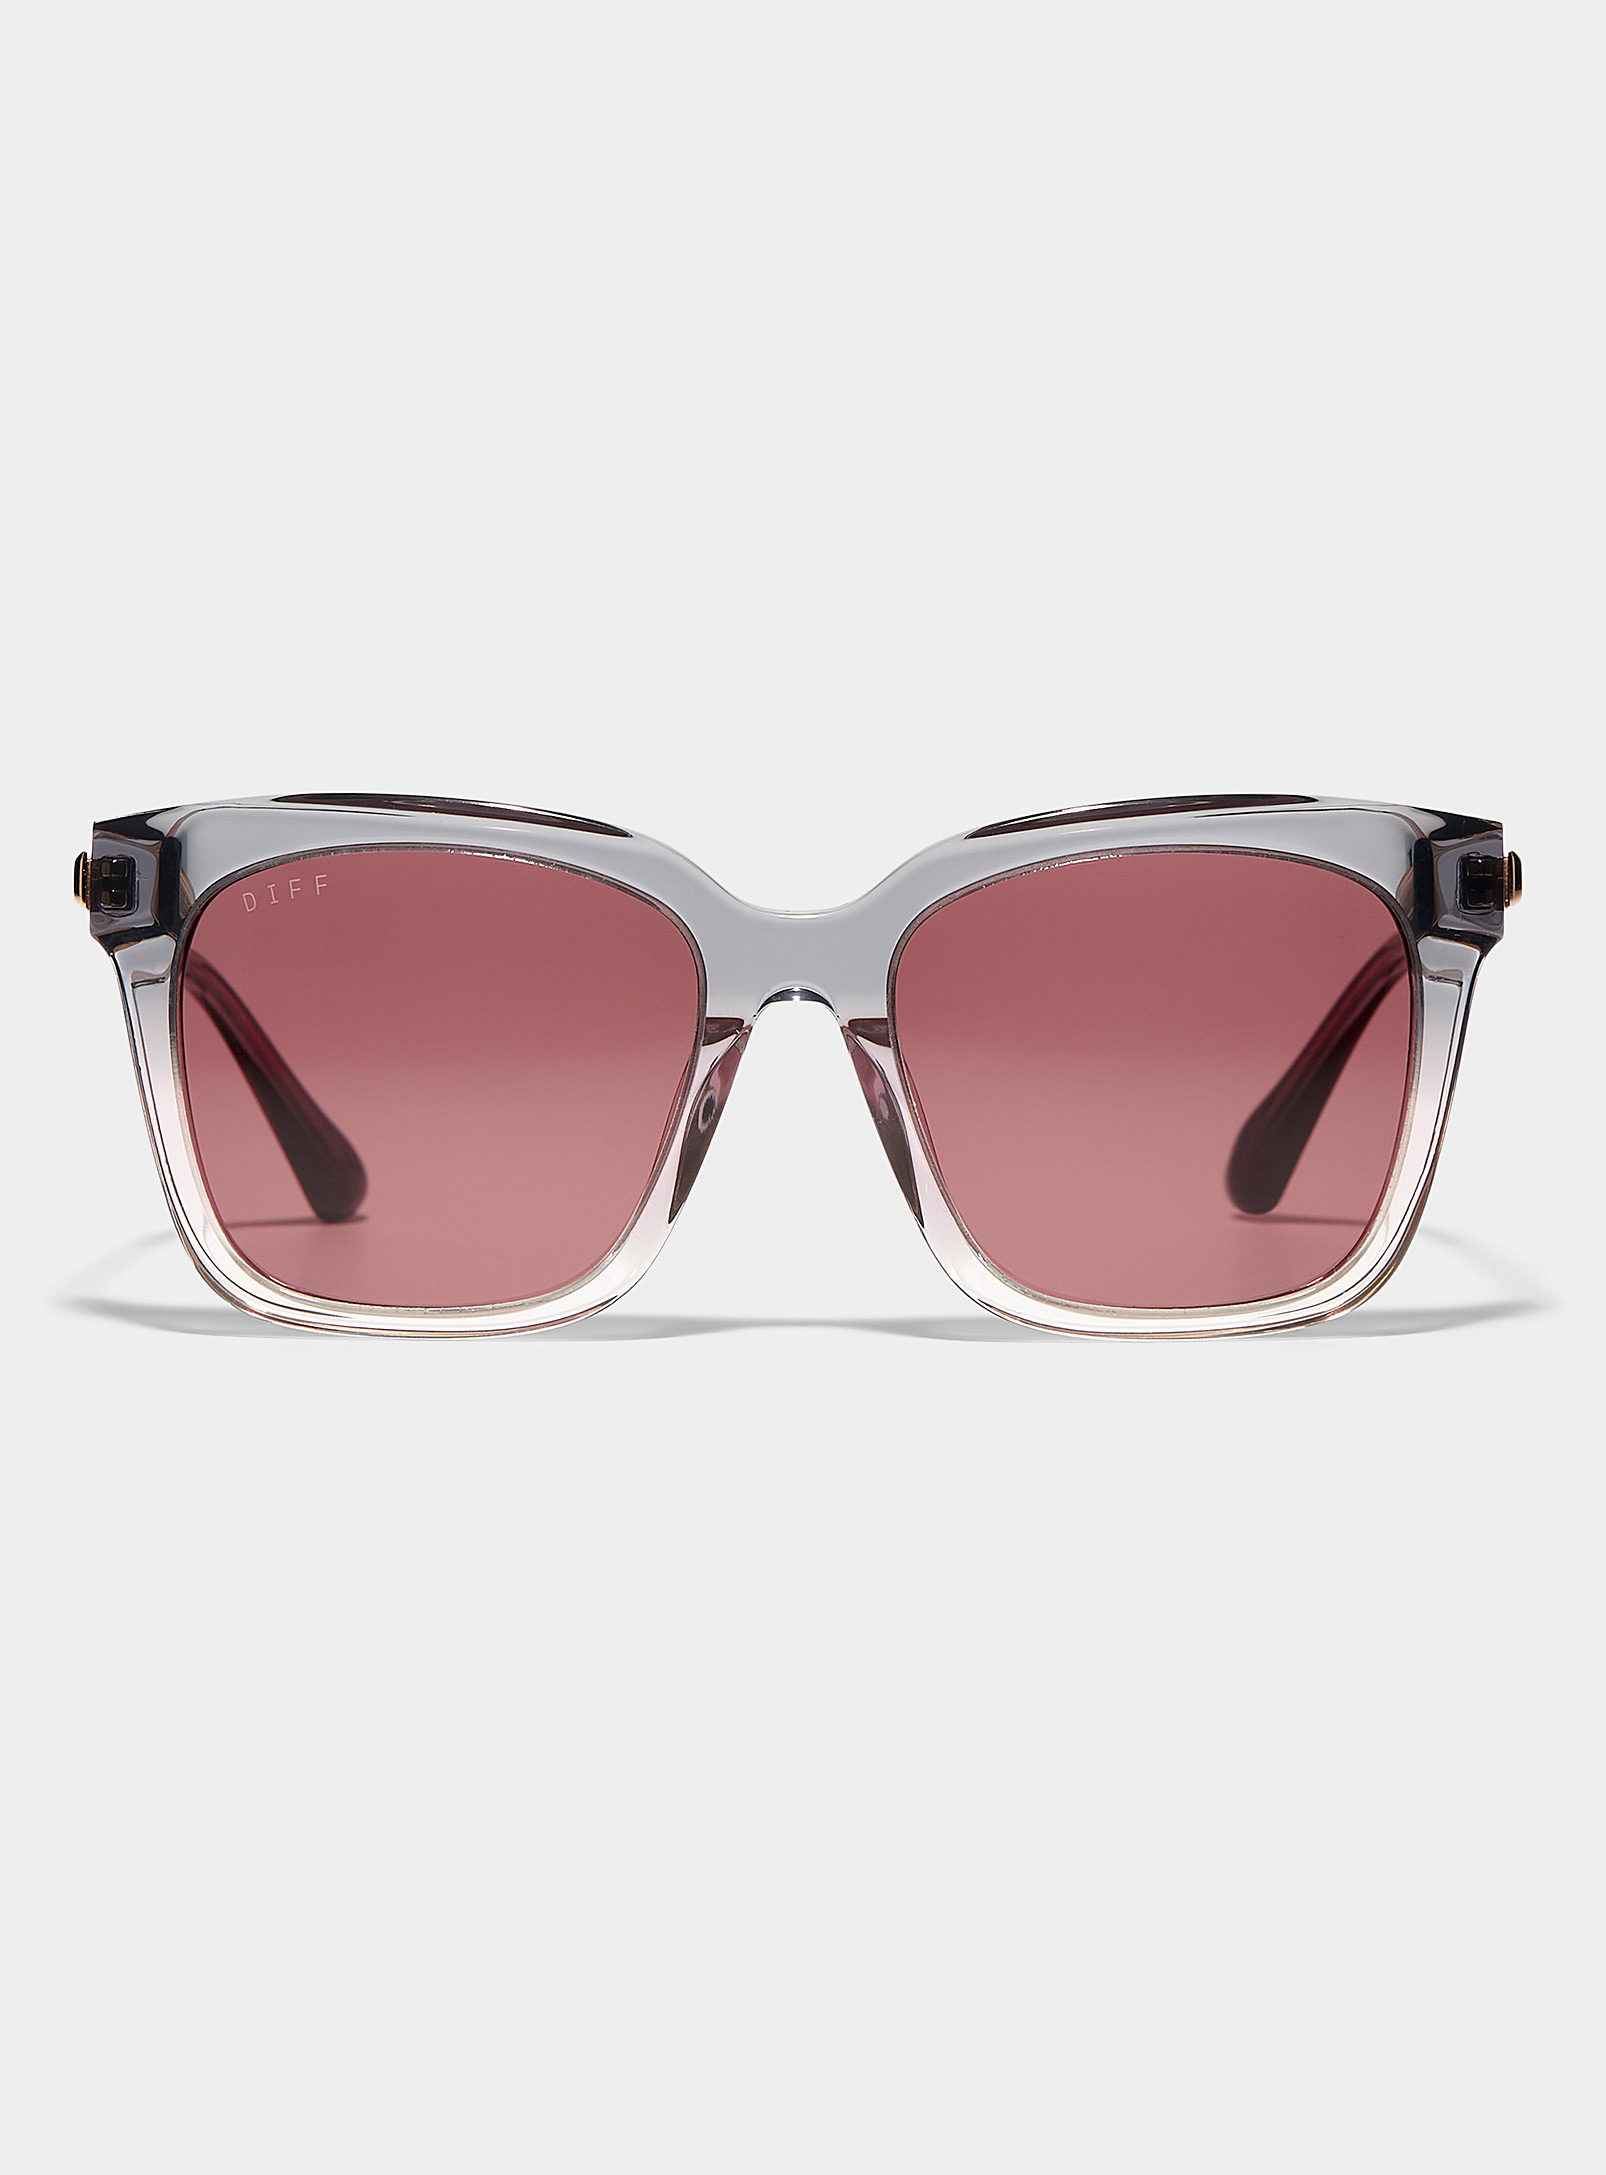 Diff Bella Square Sunglasses In Gray